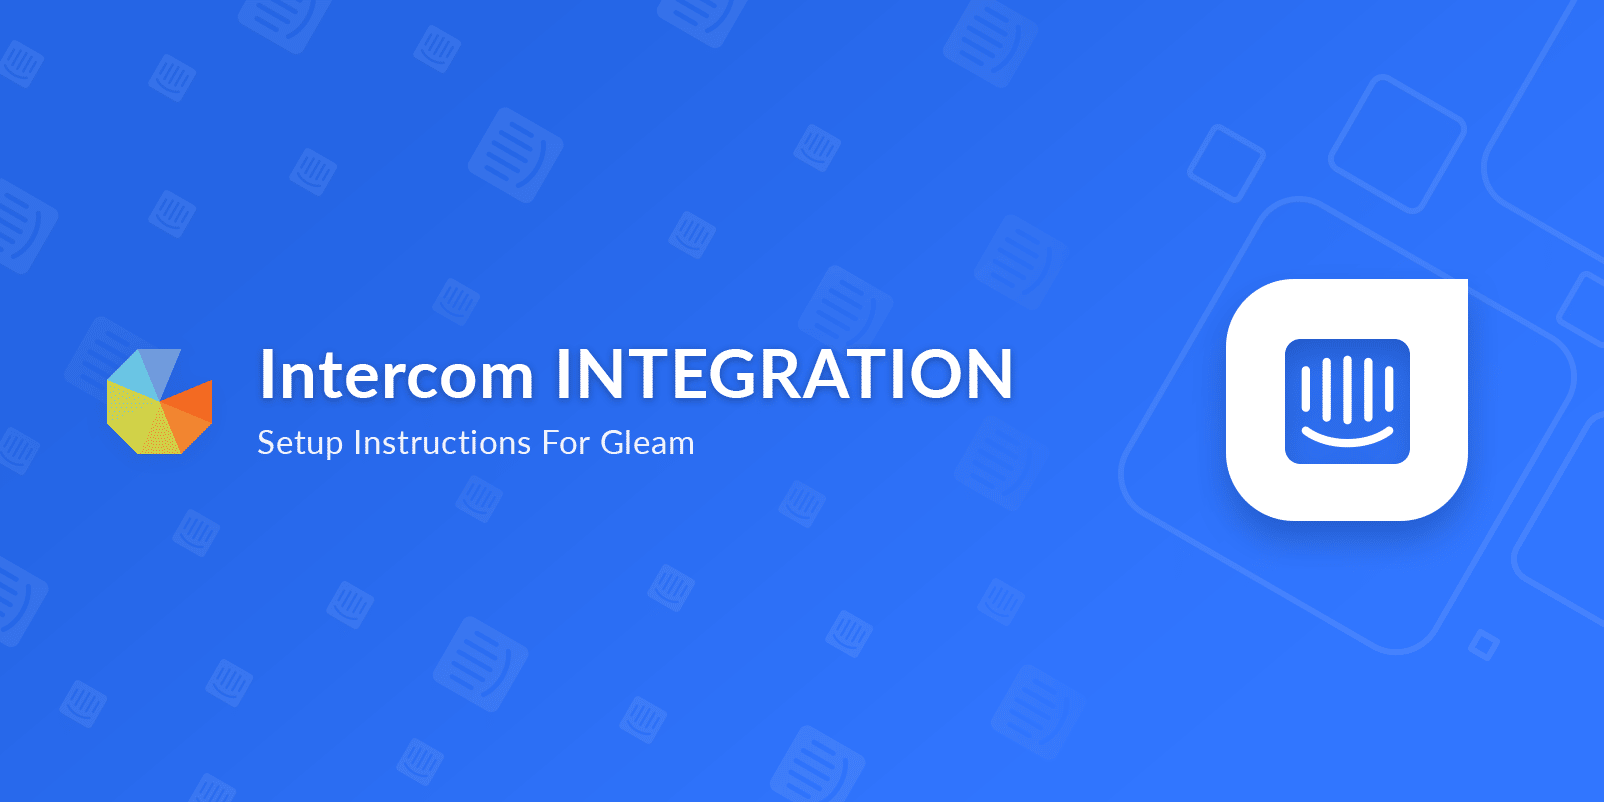 Intercom integration setup instructions for Gleam